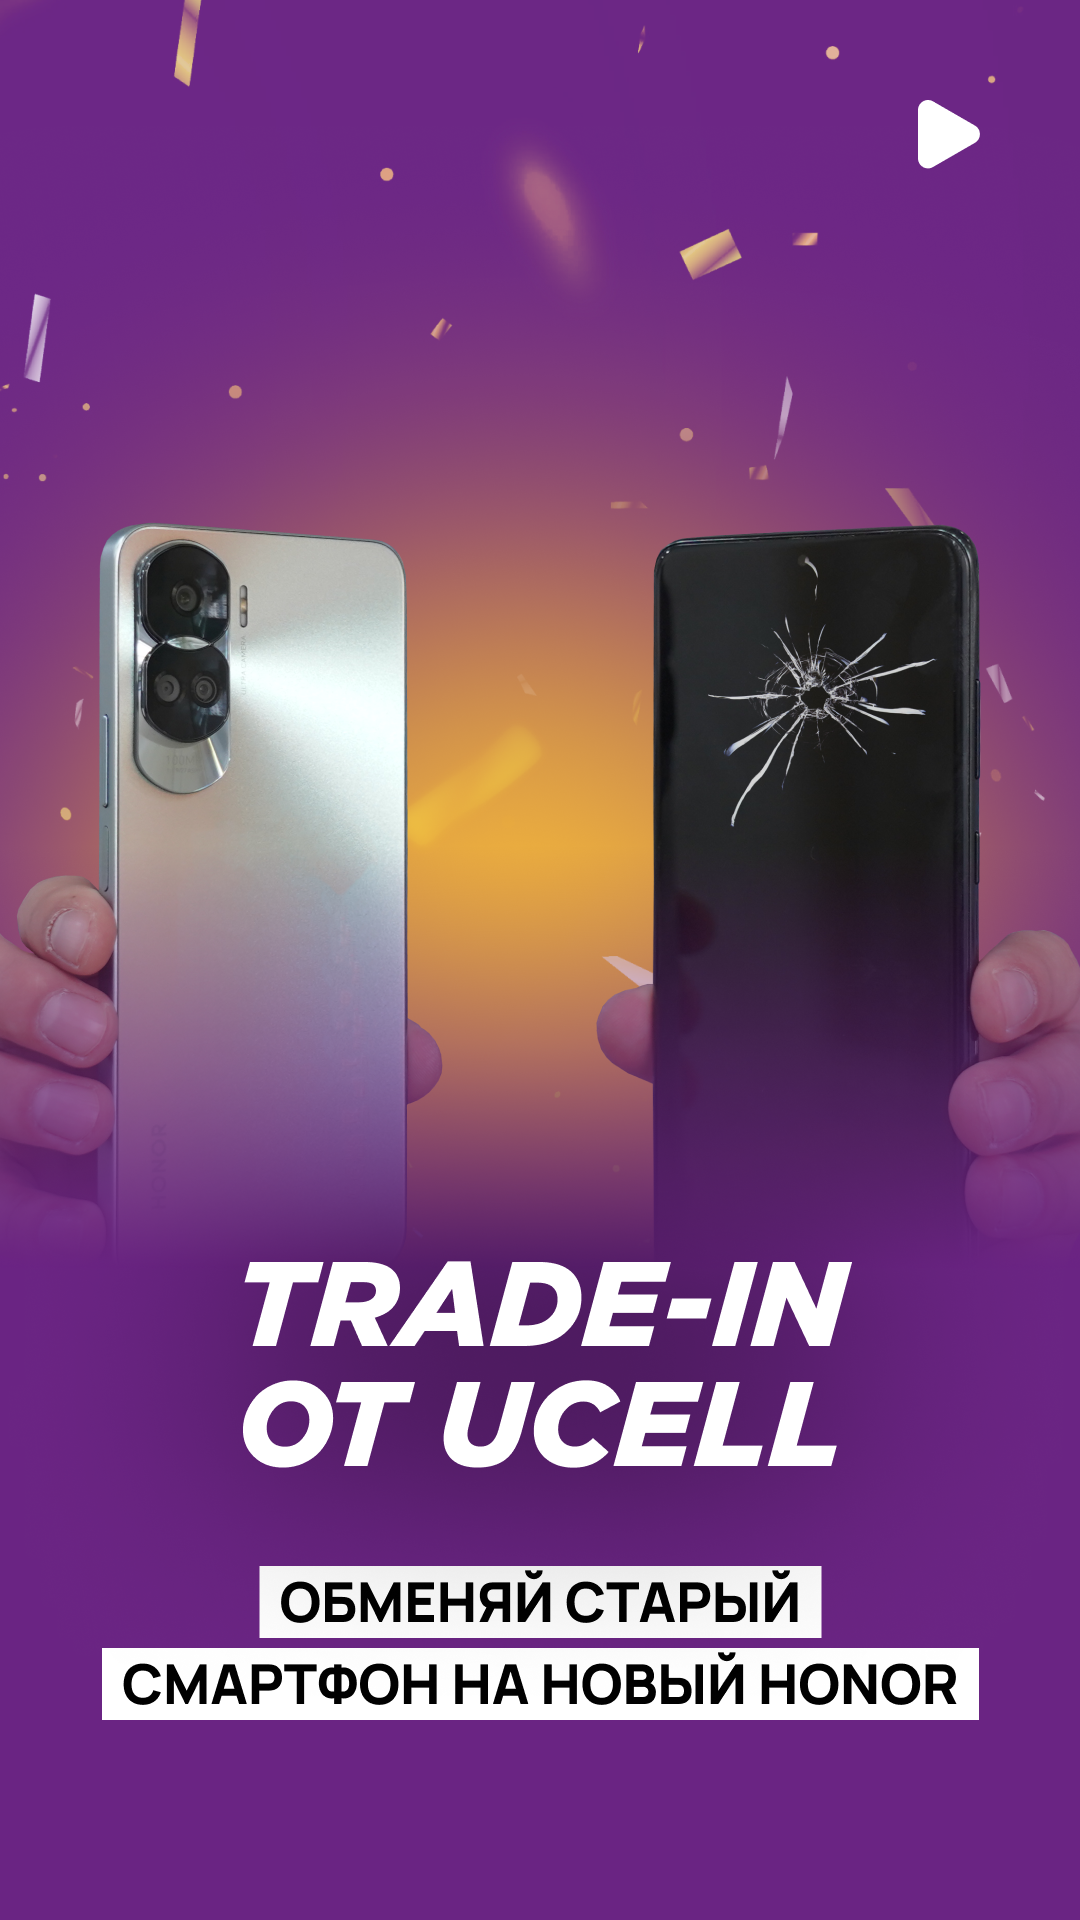 Ucell запустил новогоднюю акцию Trade-in: обмен старого телефона на новый